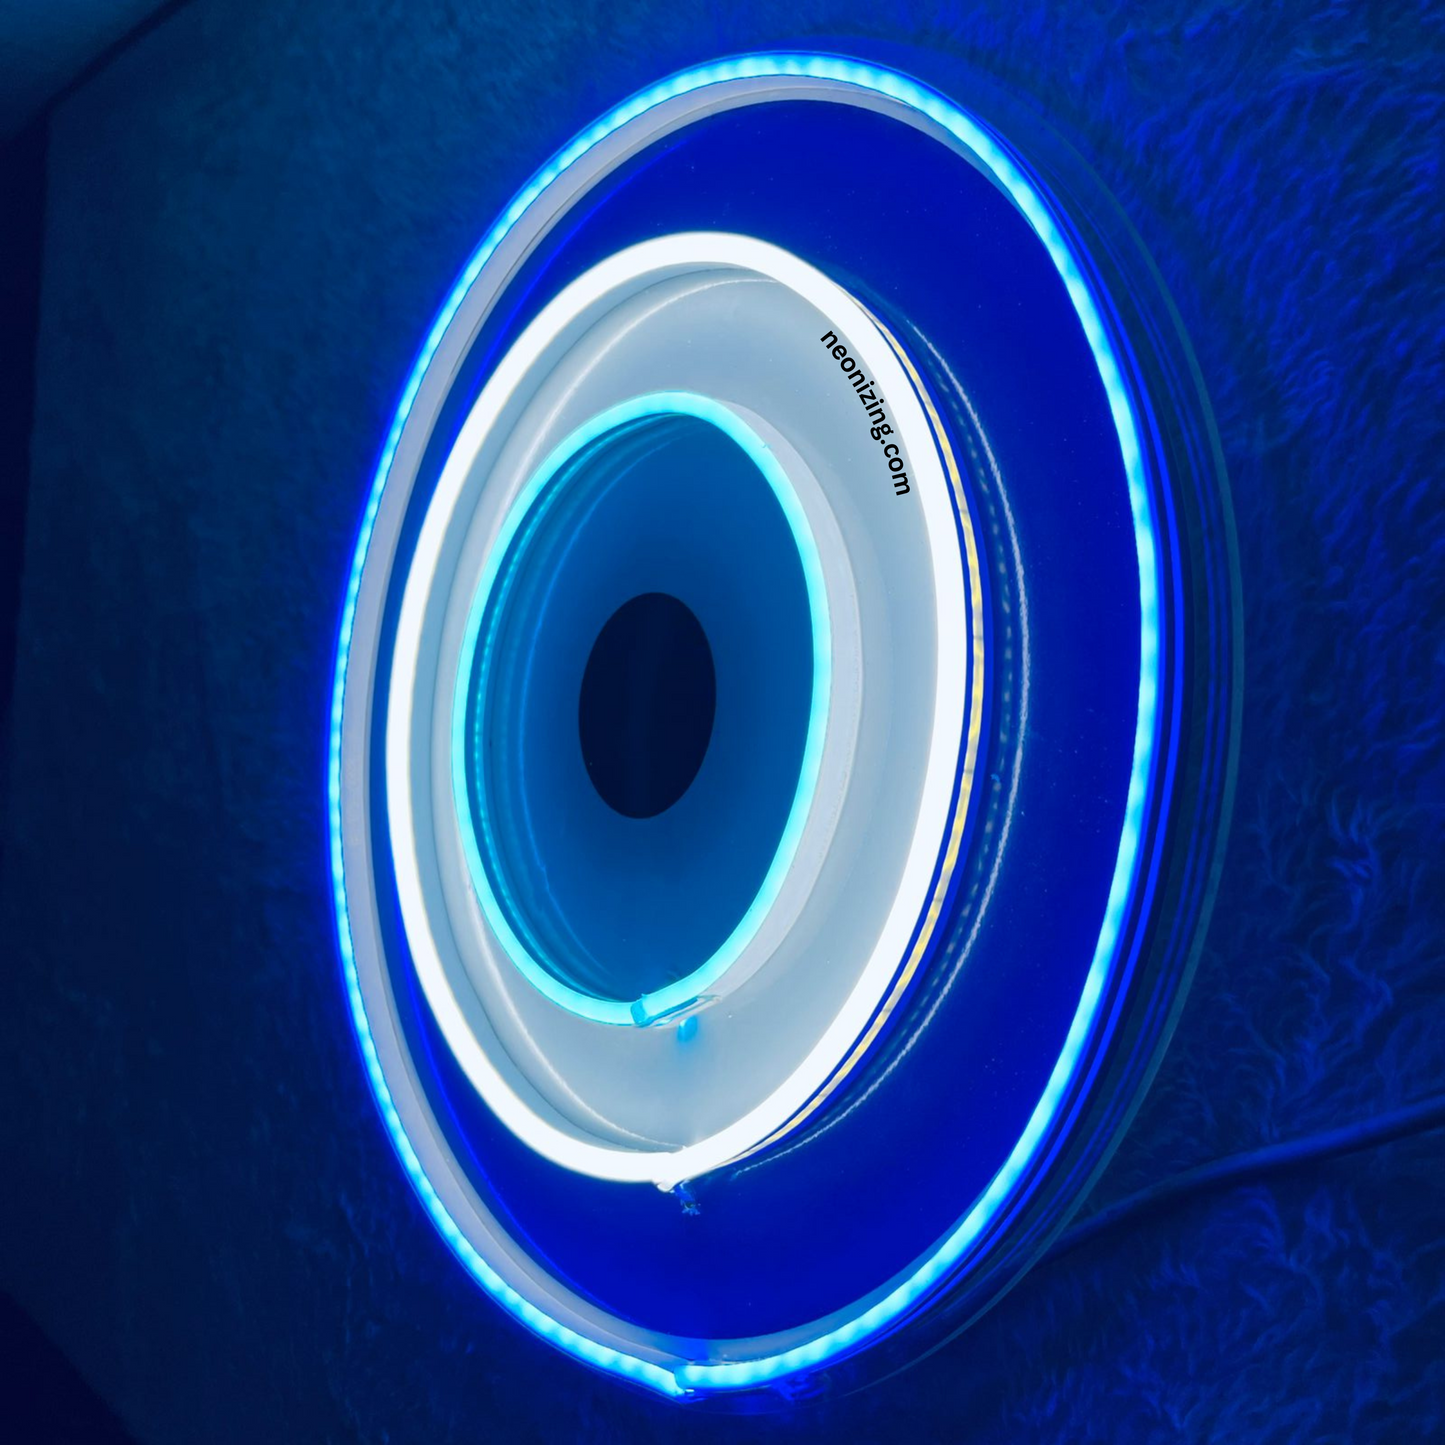 Evil Eye Neon Artwork - Neon Artistry for Protection